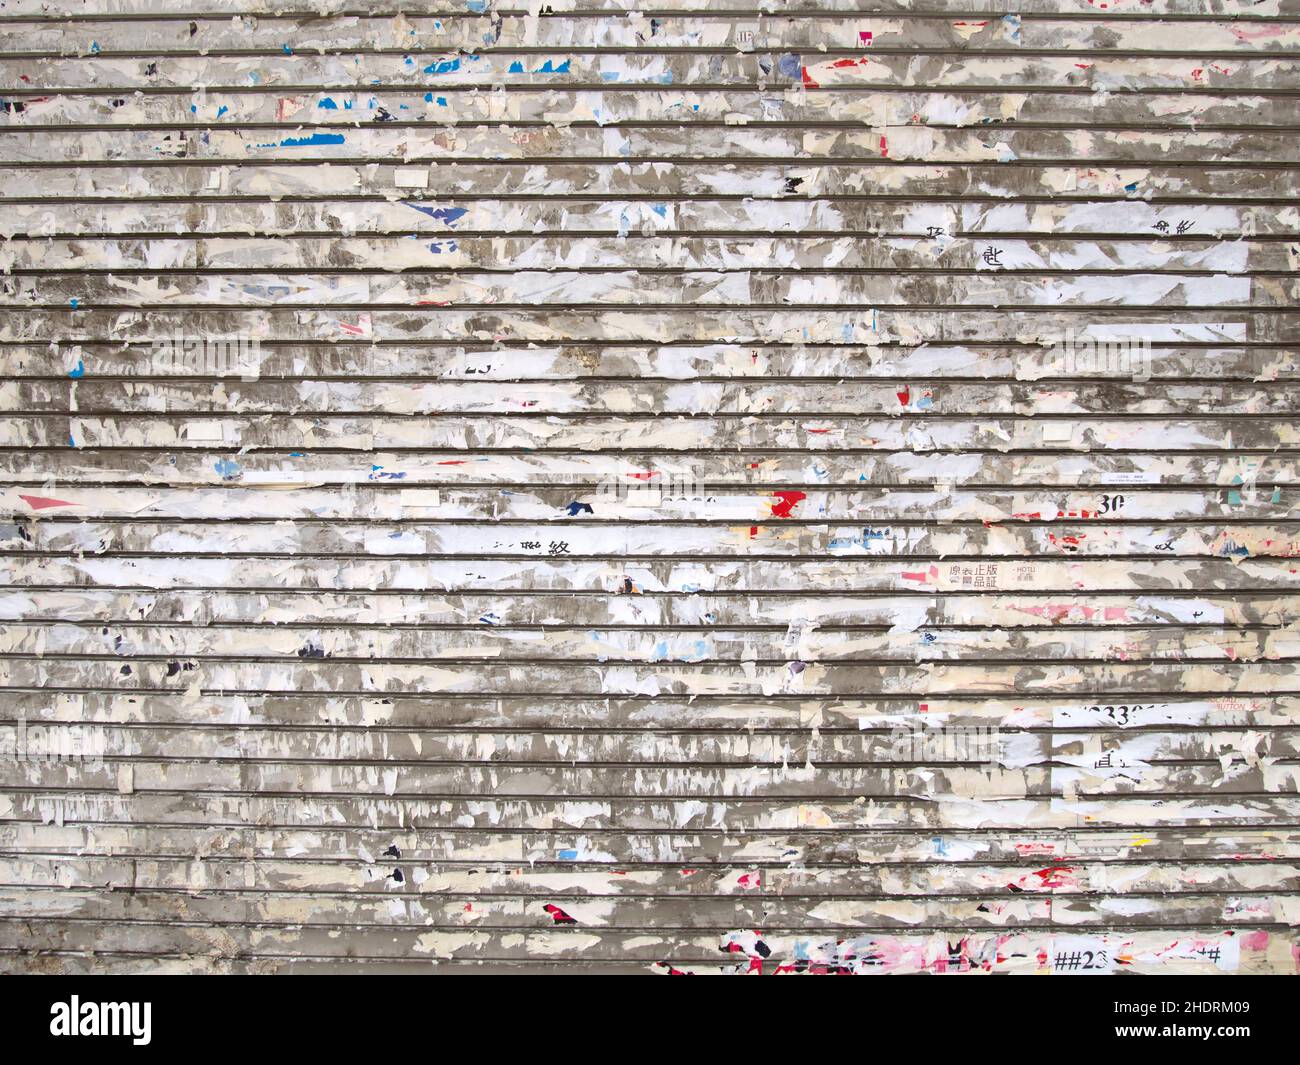 wall, paper scraps, walls, paper scrap Stock Photo